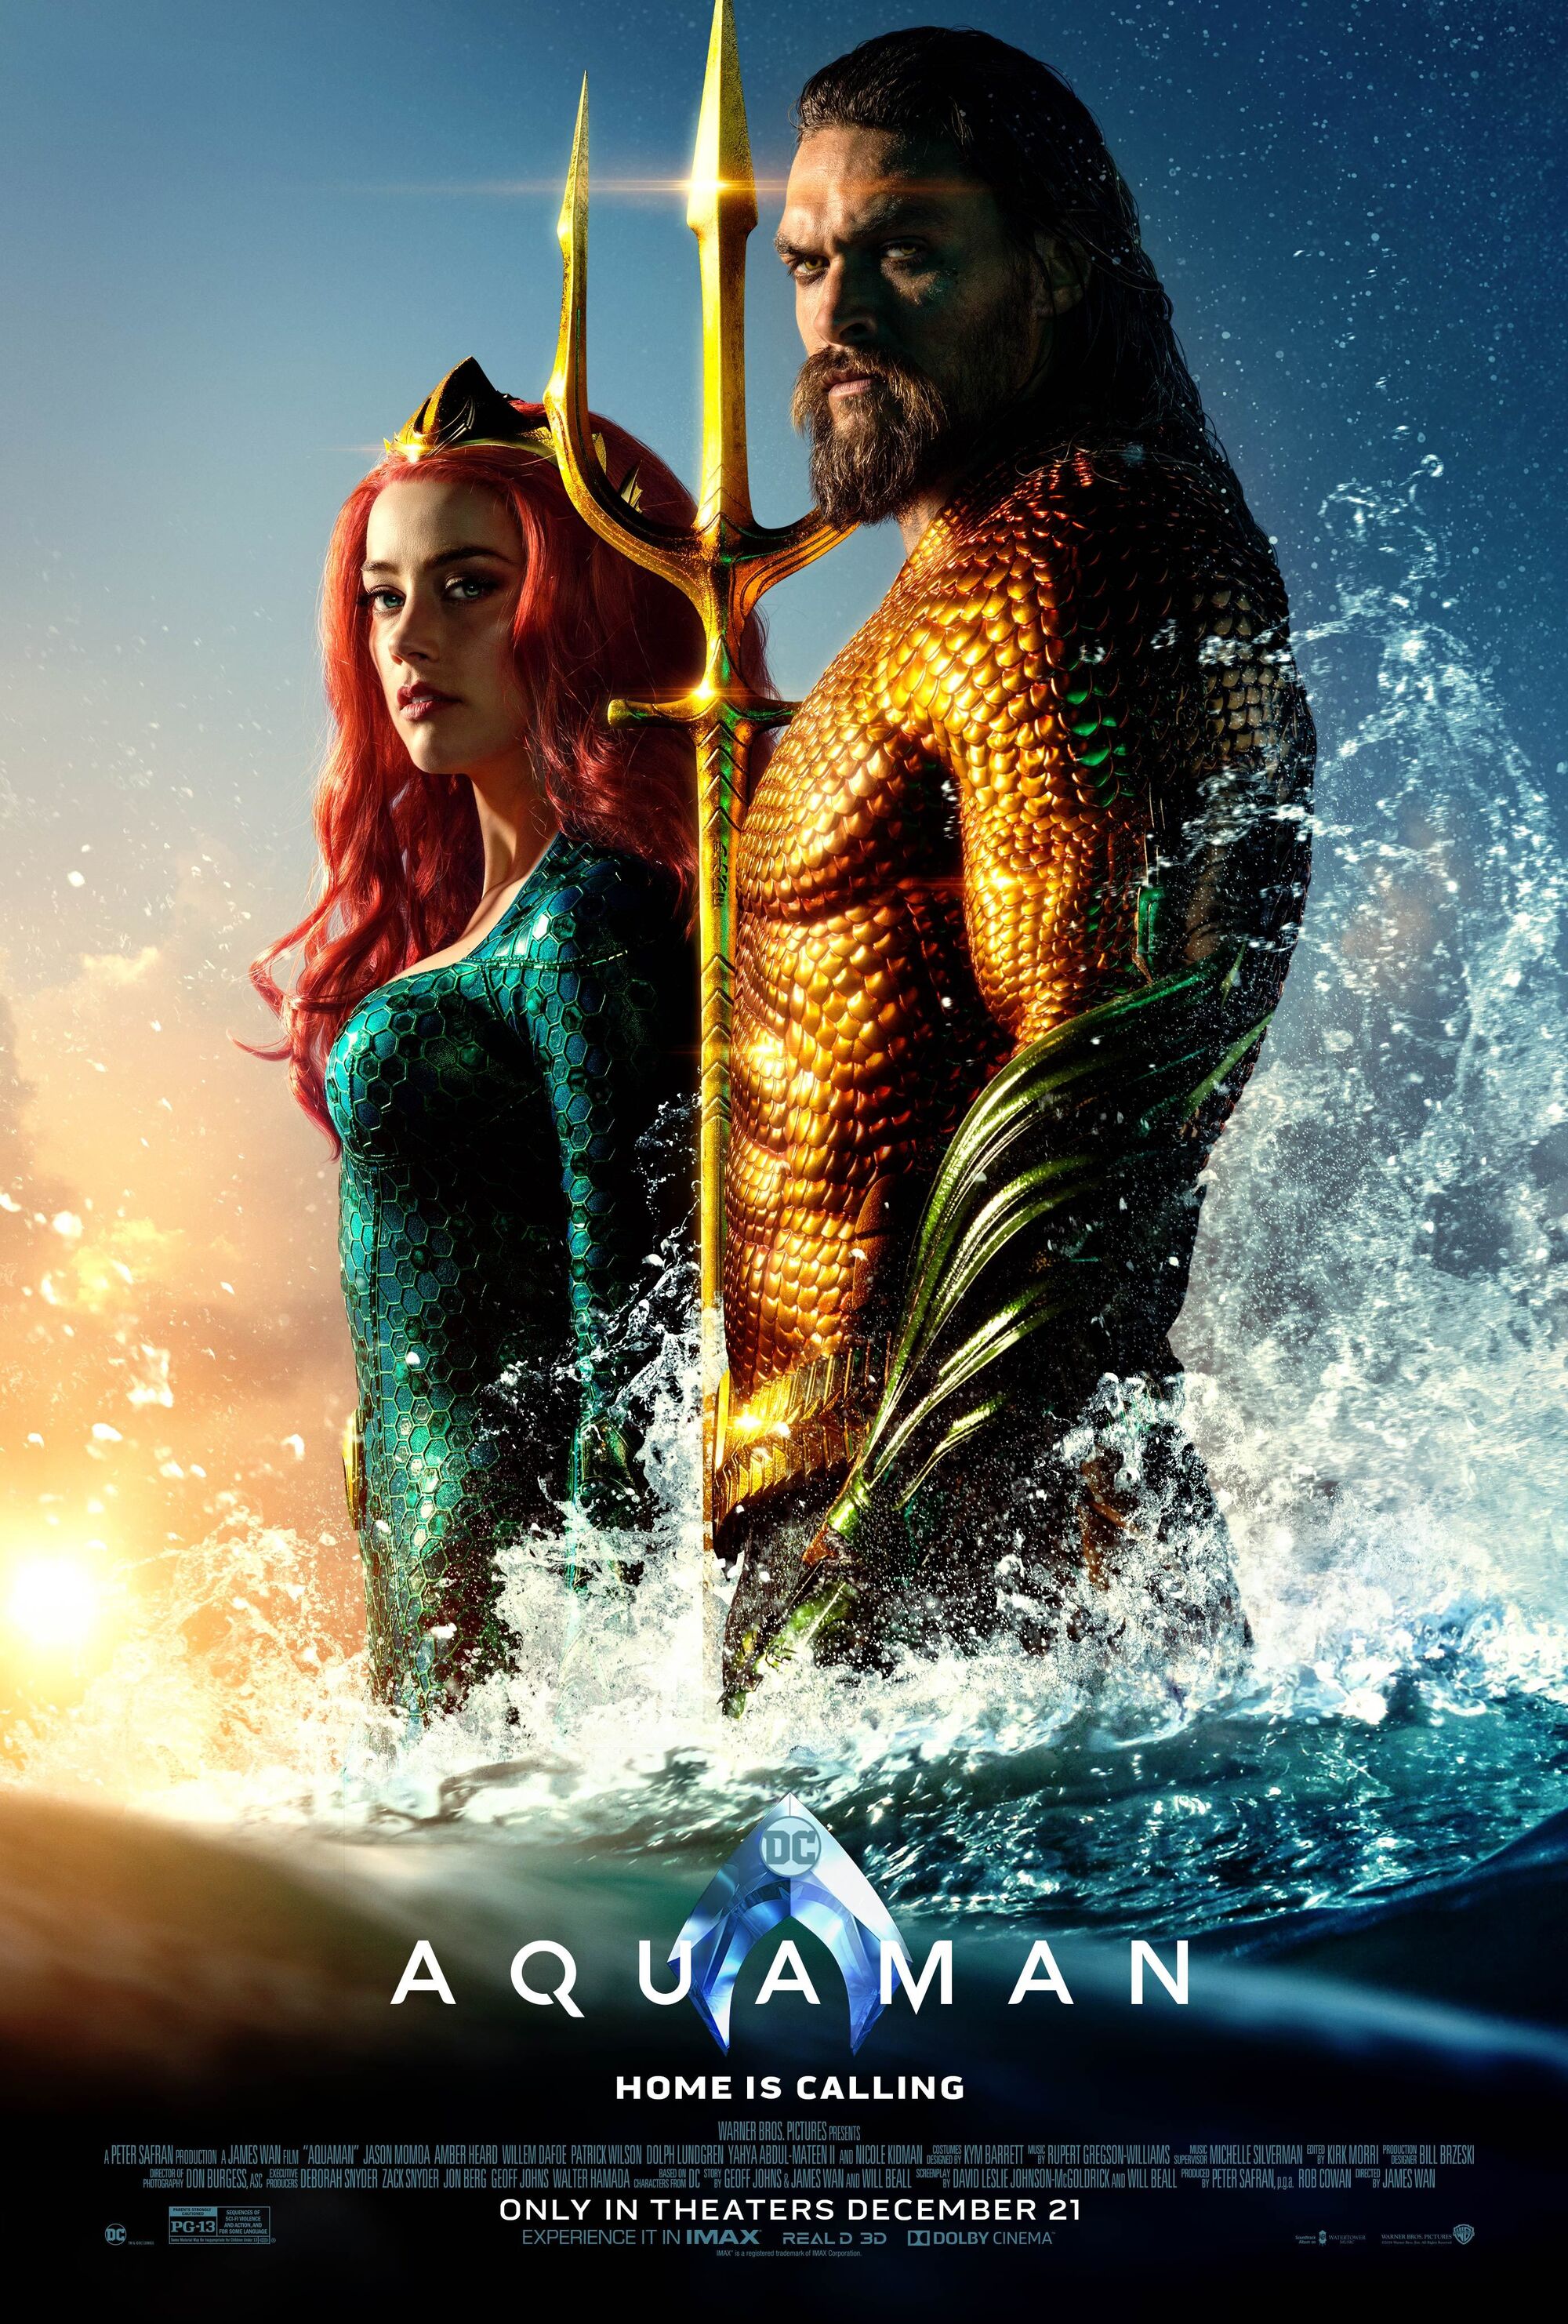 THE MOVIES IMDB 2018: Aquaman 2018 Movie Wiki